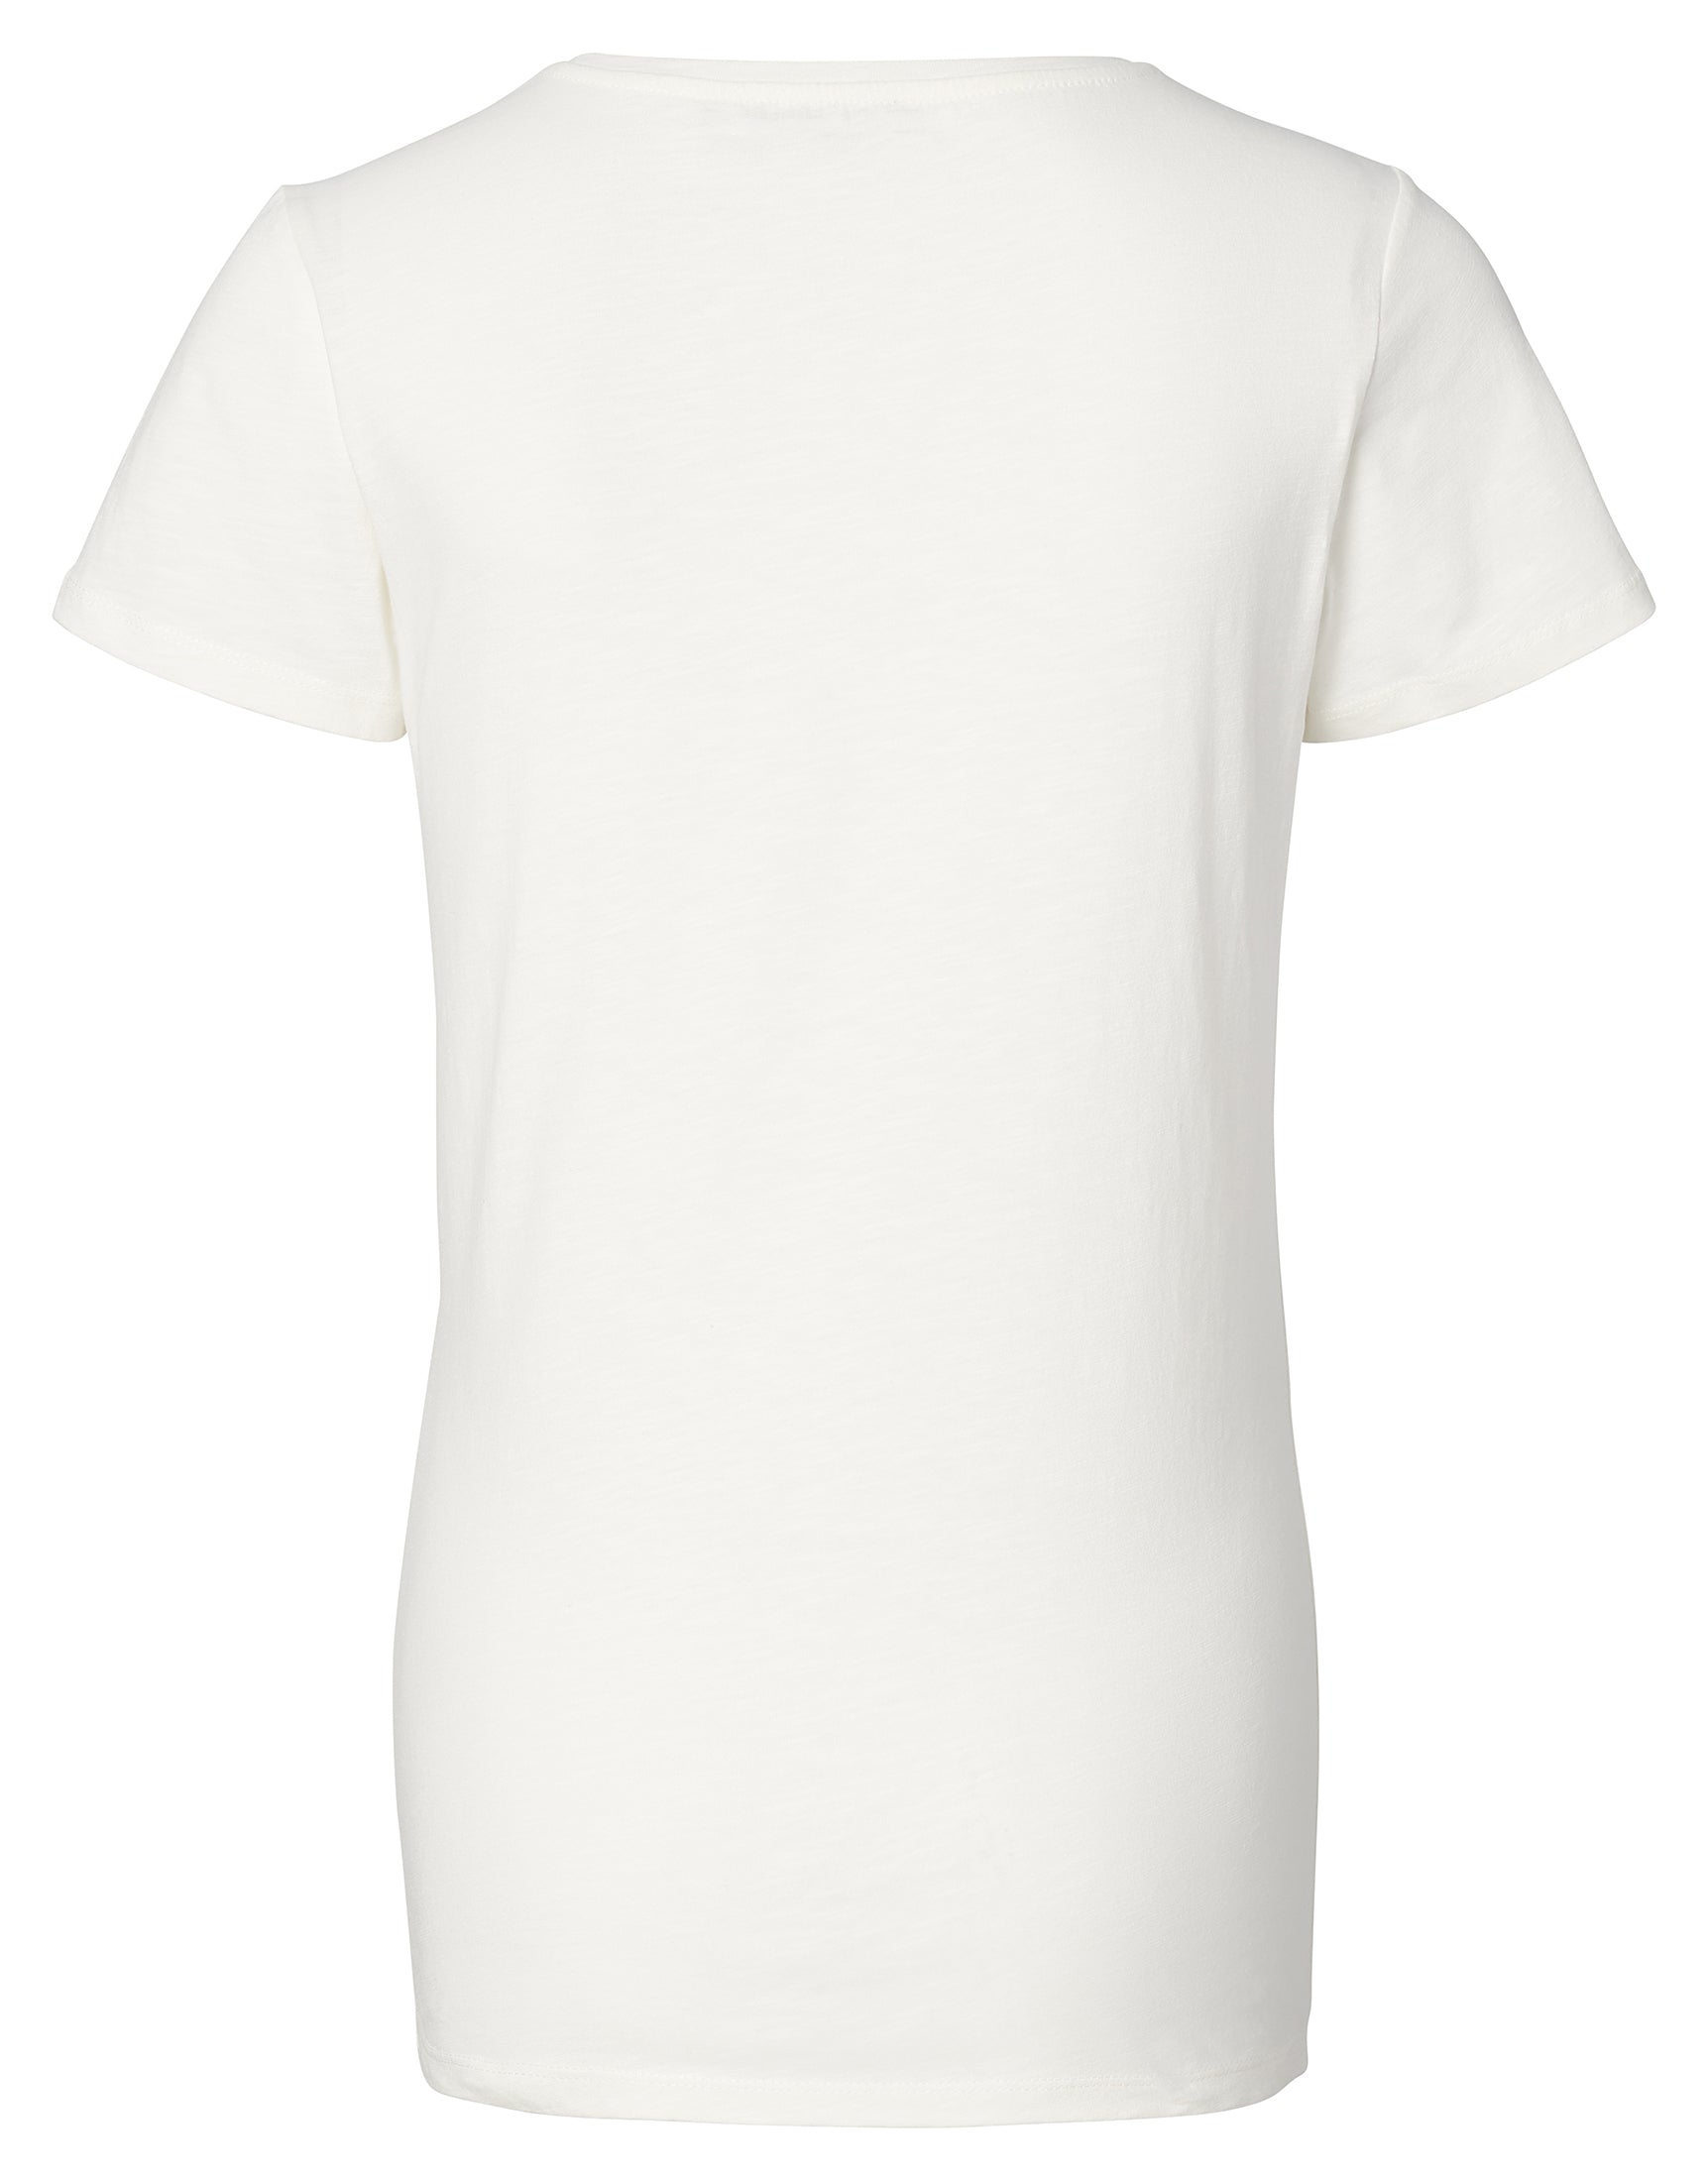 T-shirt French Rivera - Marshmallow